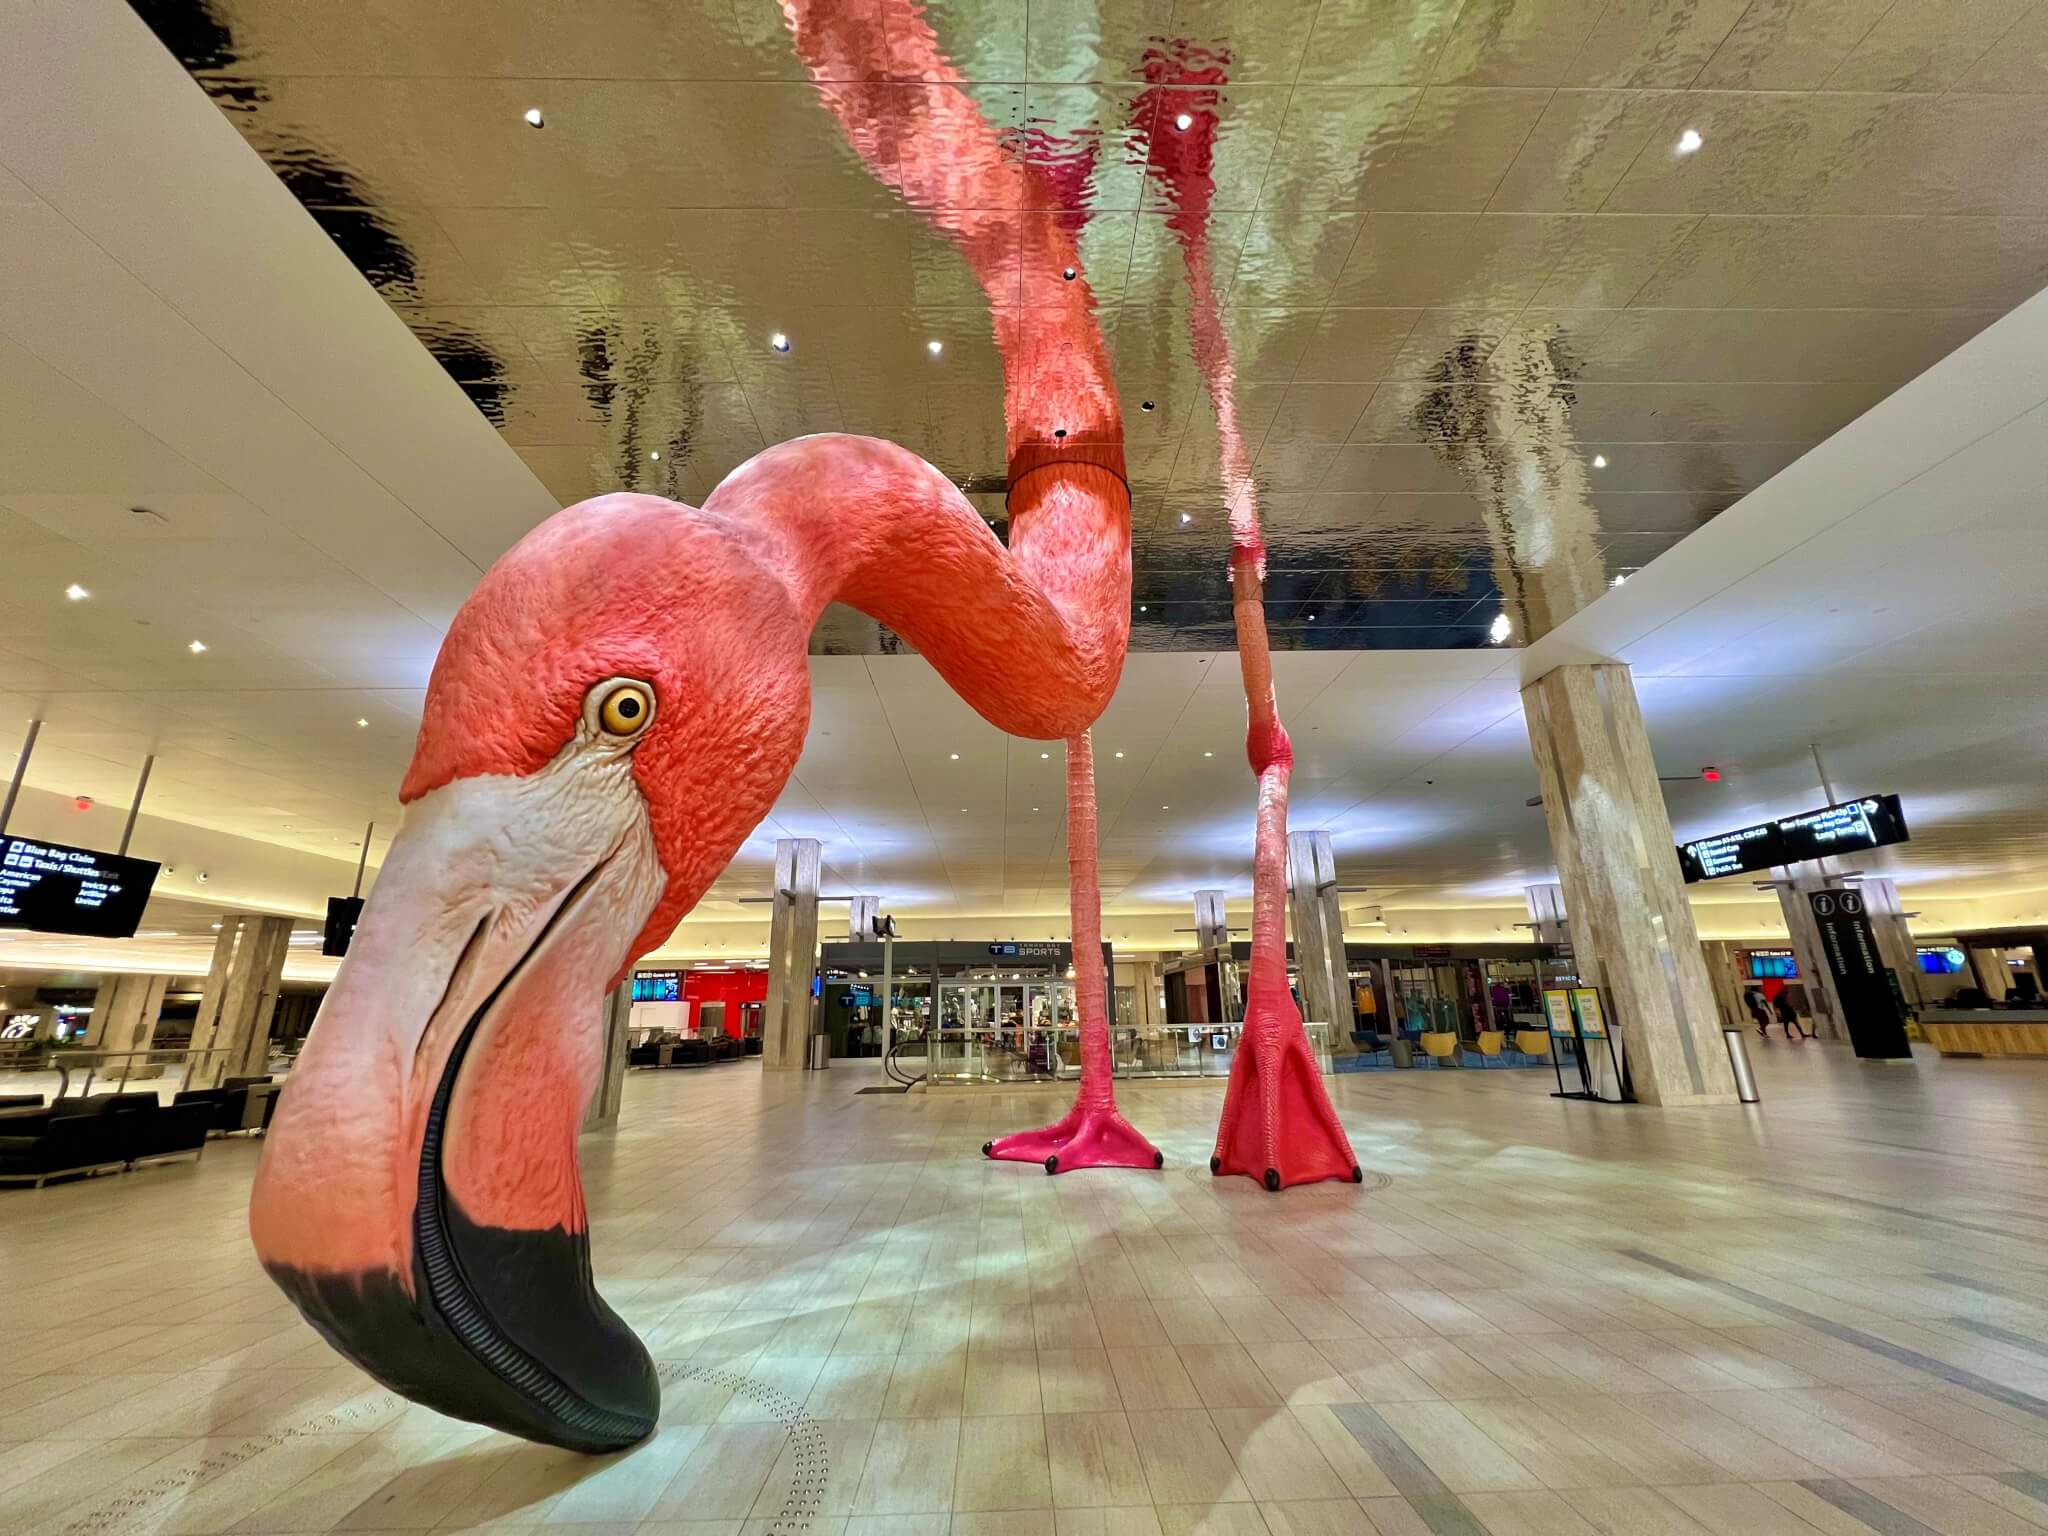 flamingo sculpture in airport